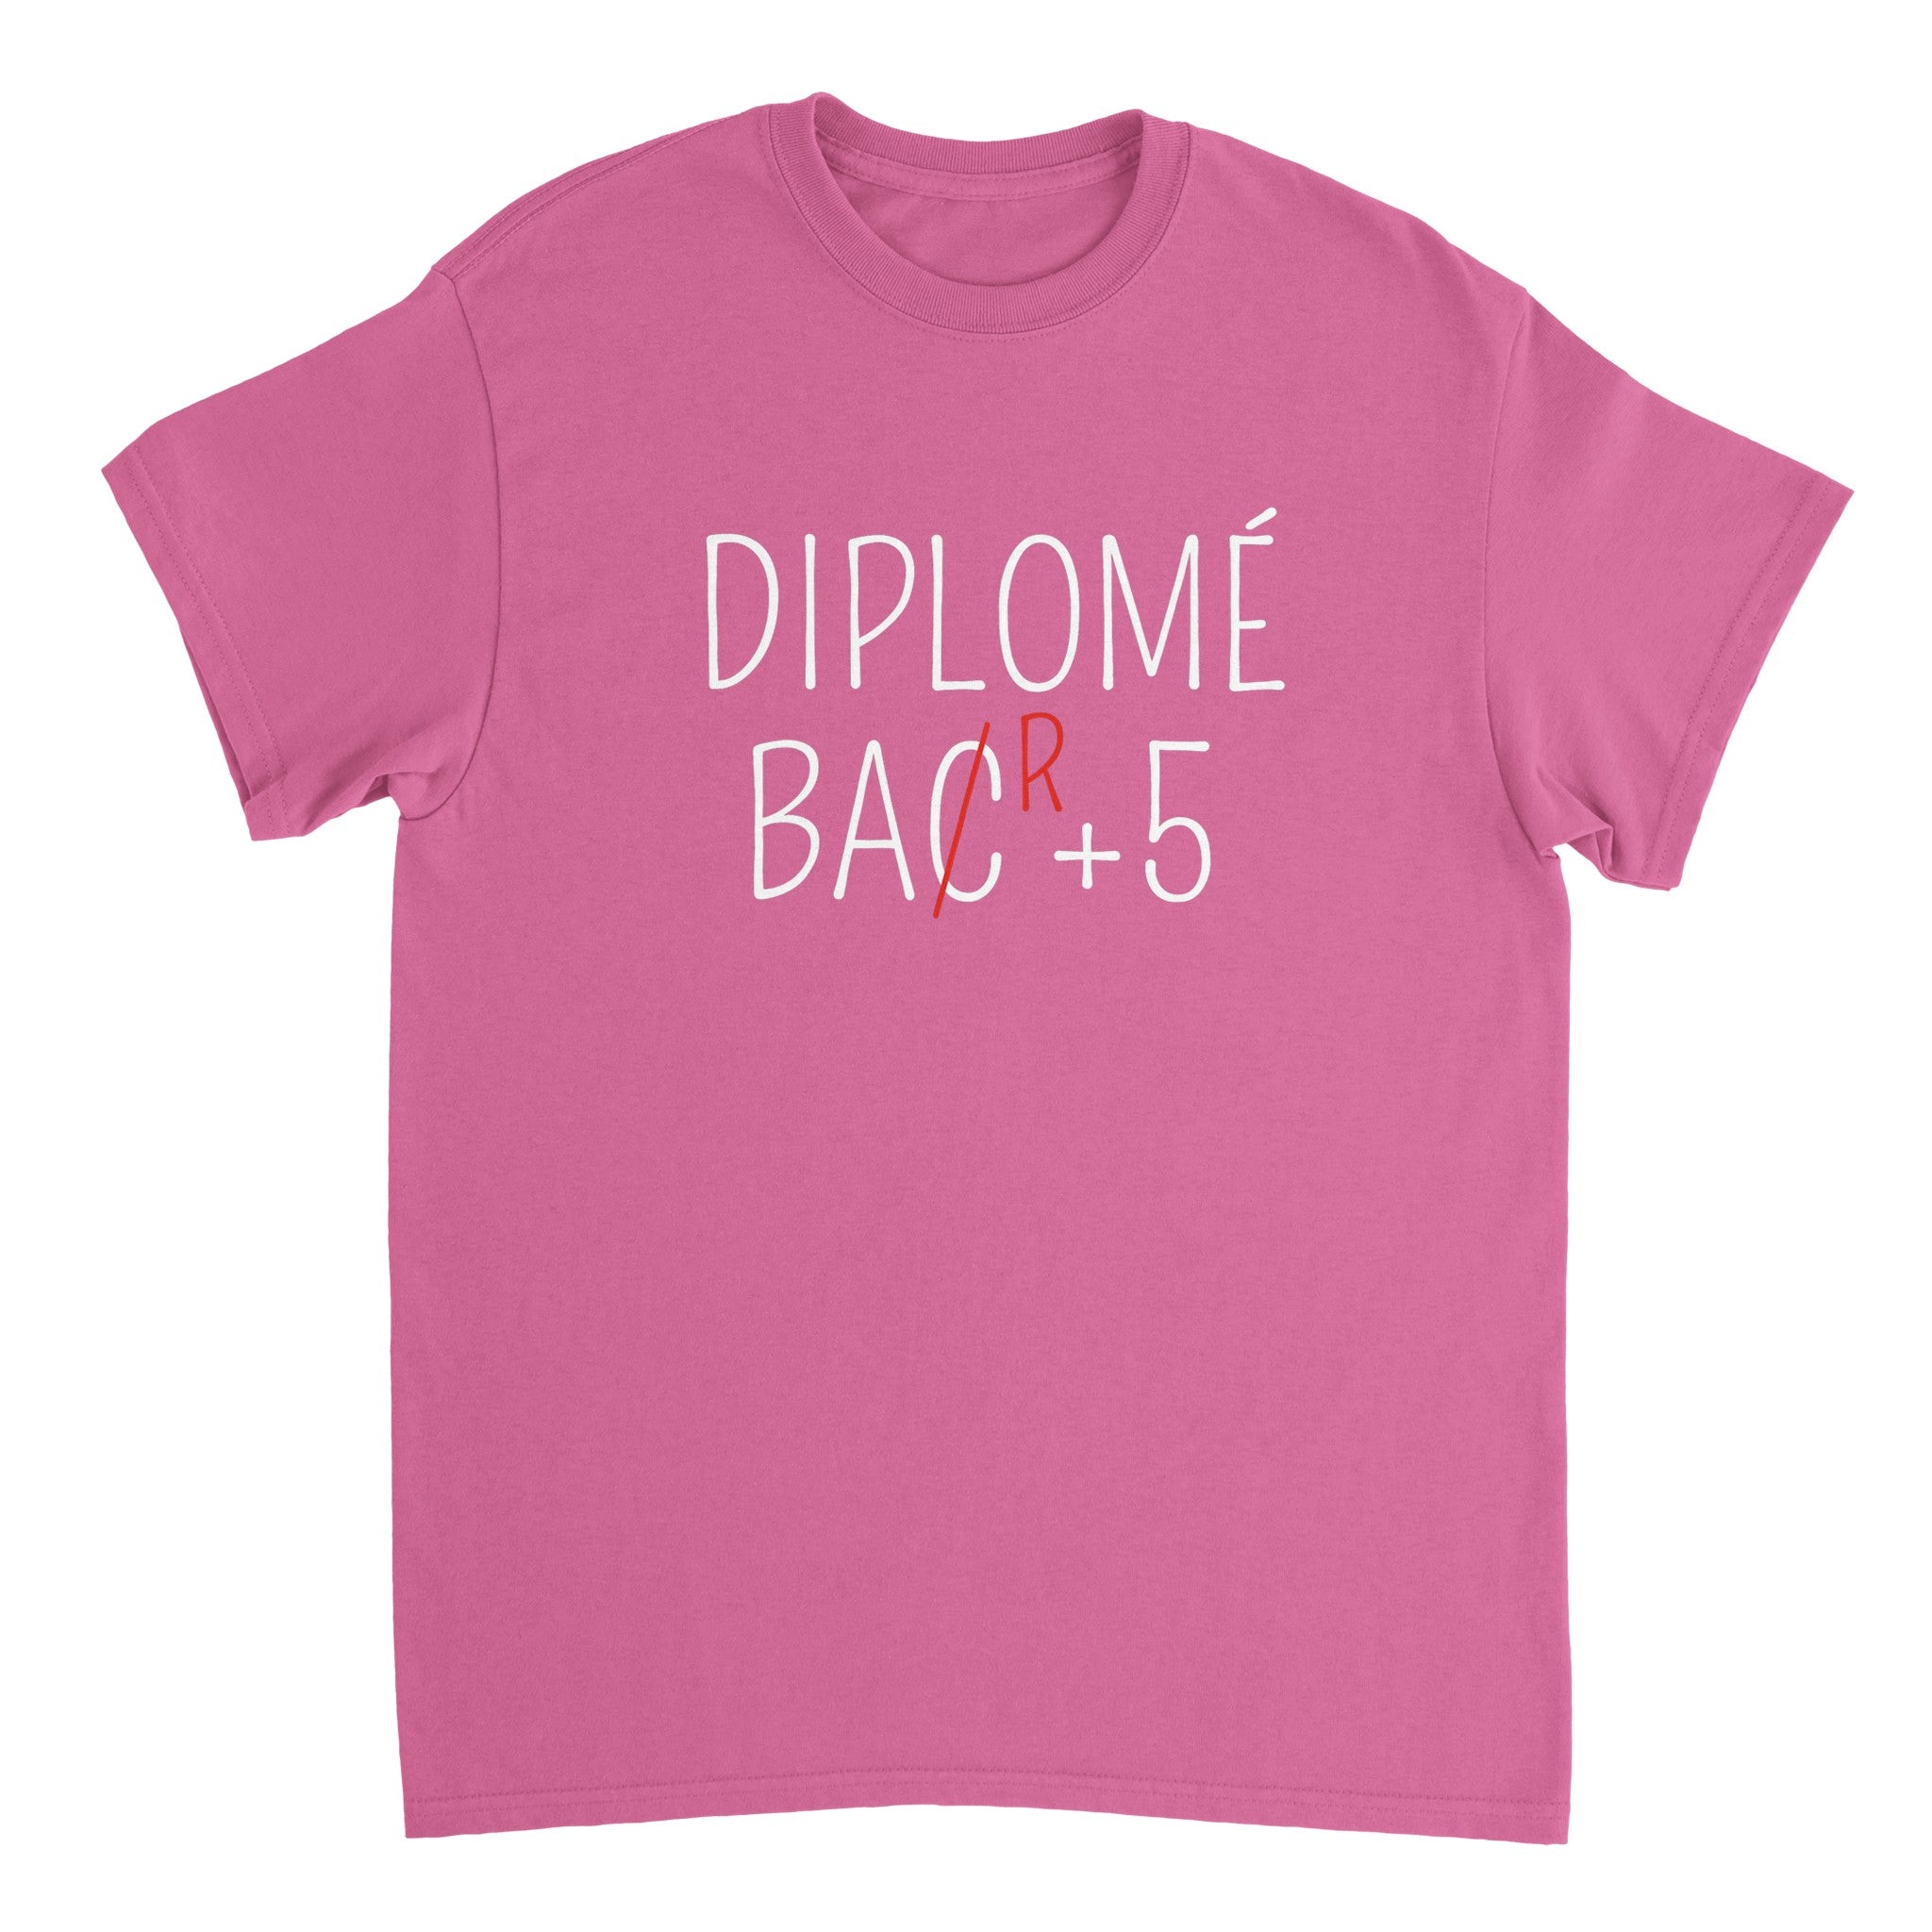 T-shirt Apéro "Diplômé Bar+5" | Mixte